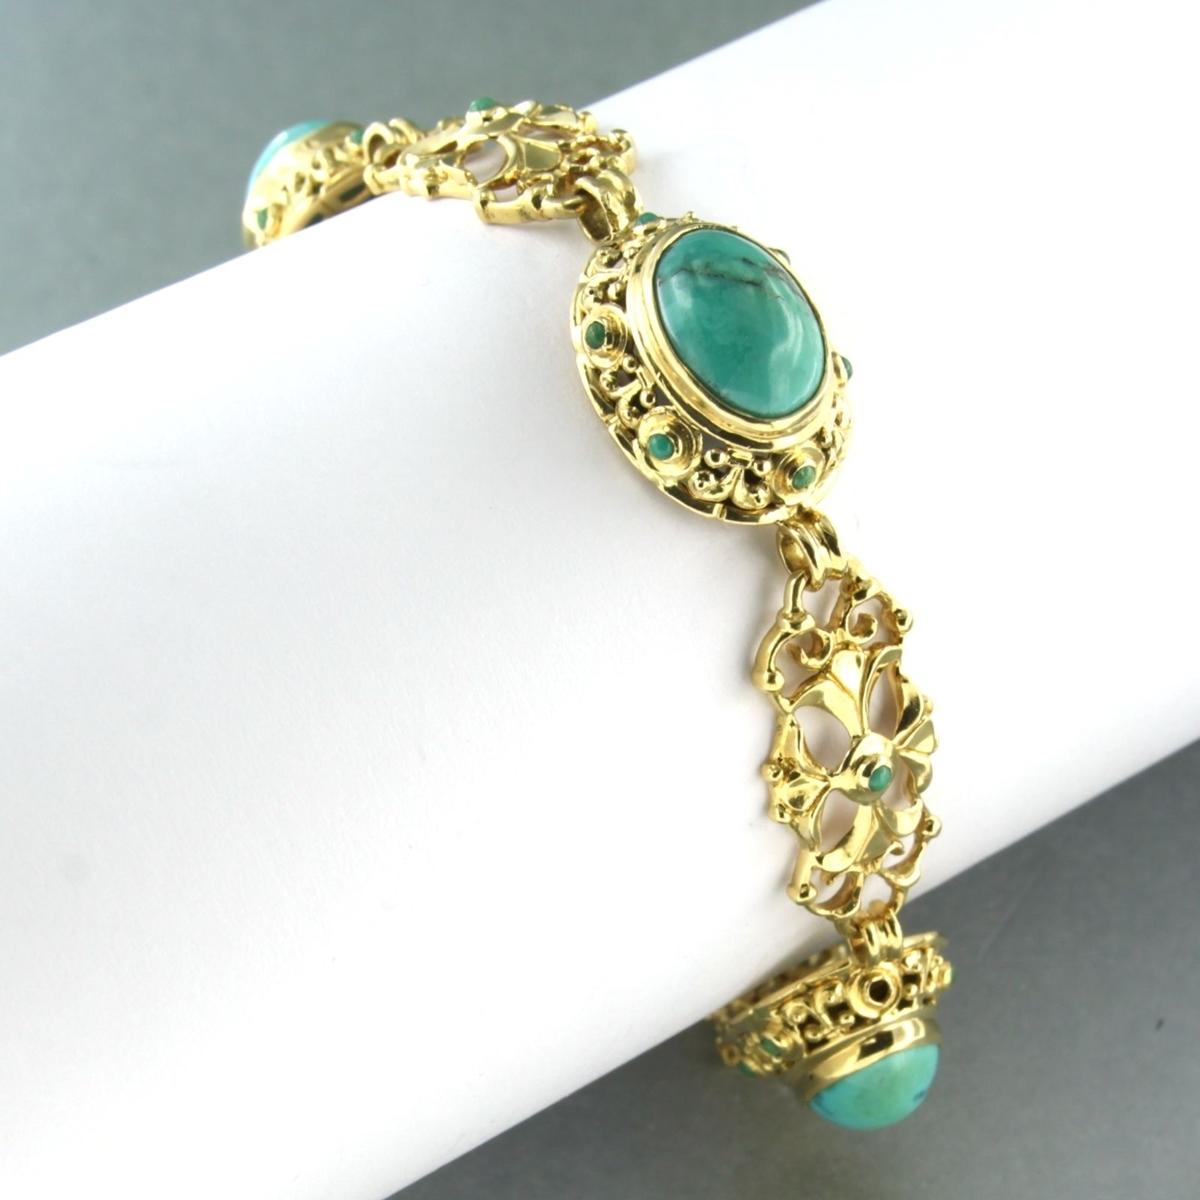 Bracelet en or jaune 18 carats serti de turquoise - 18 cm de long

description détaillée :

Le bracelet mesure environ 18 cm de long et 1,4 cm de large, et est muni d'une chaîne de sécurité.

Poids total du bracelet : 24,3 grammes

Occupé par :

- 4